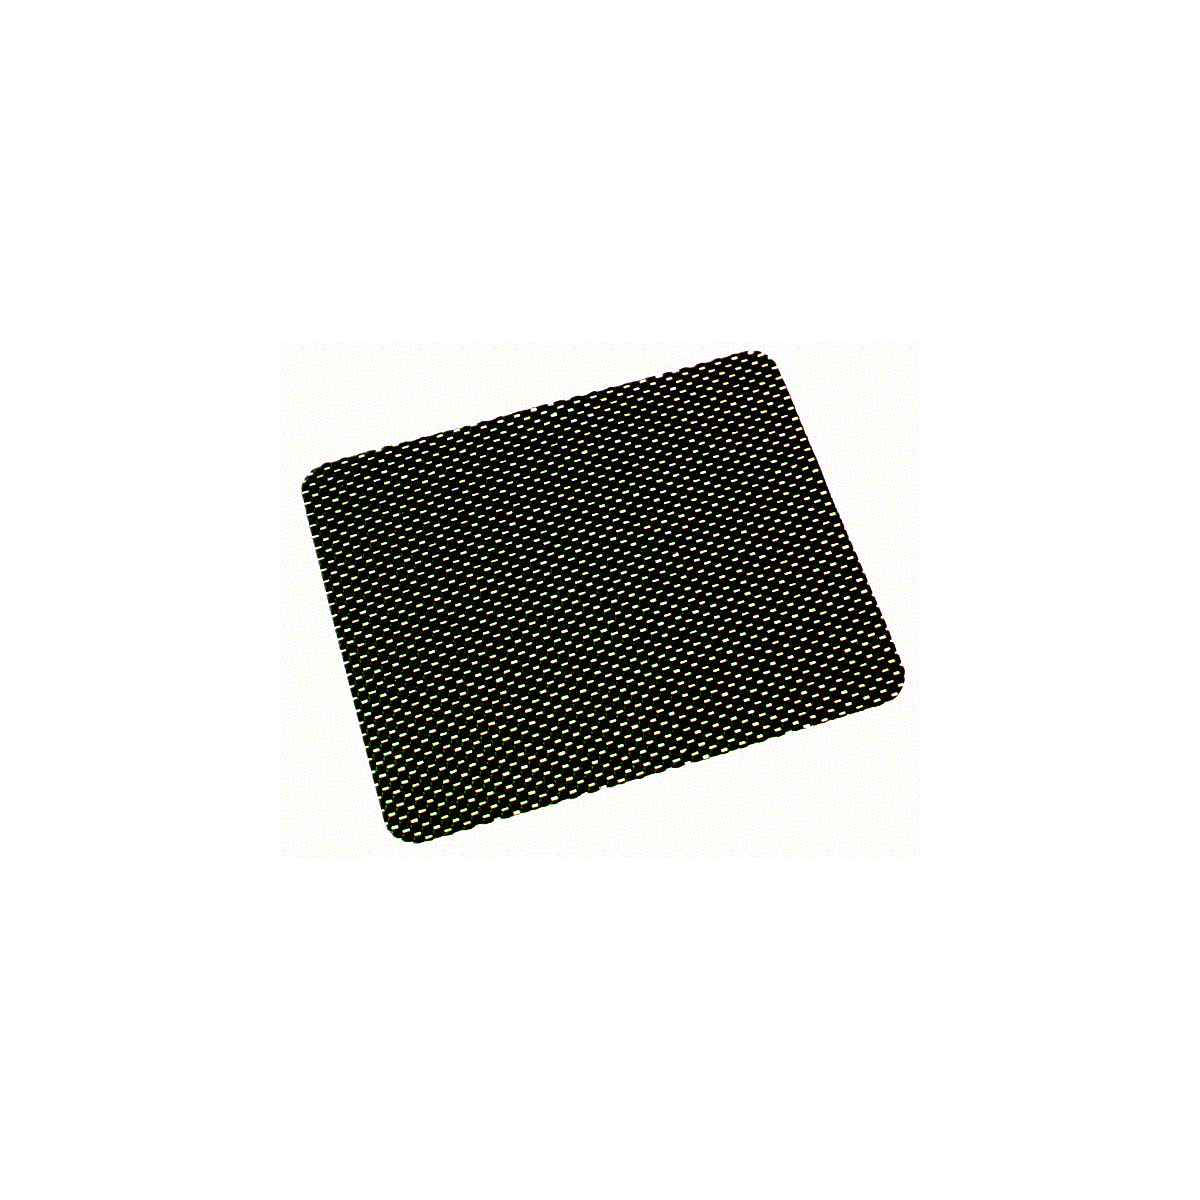 Antirutsch-Matten-Einlage EURO-CAT 64, schwarz, 4 mm dick - Ihr Shop ,  11,99 €